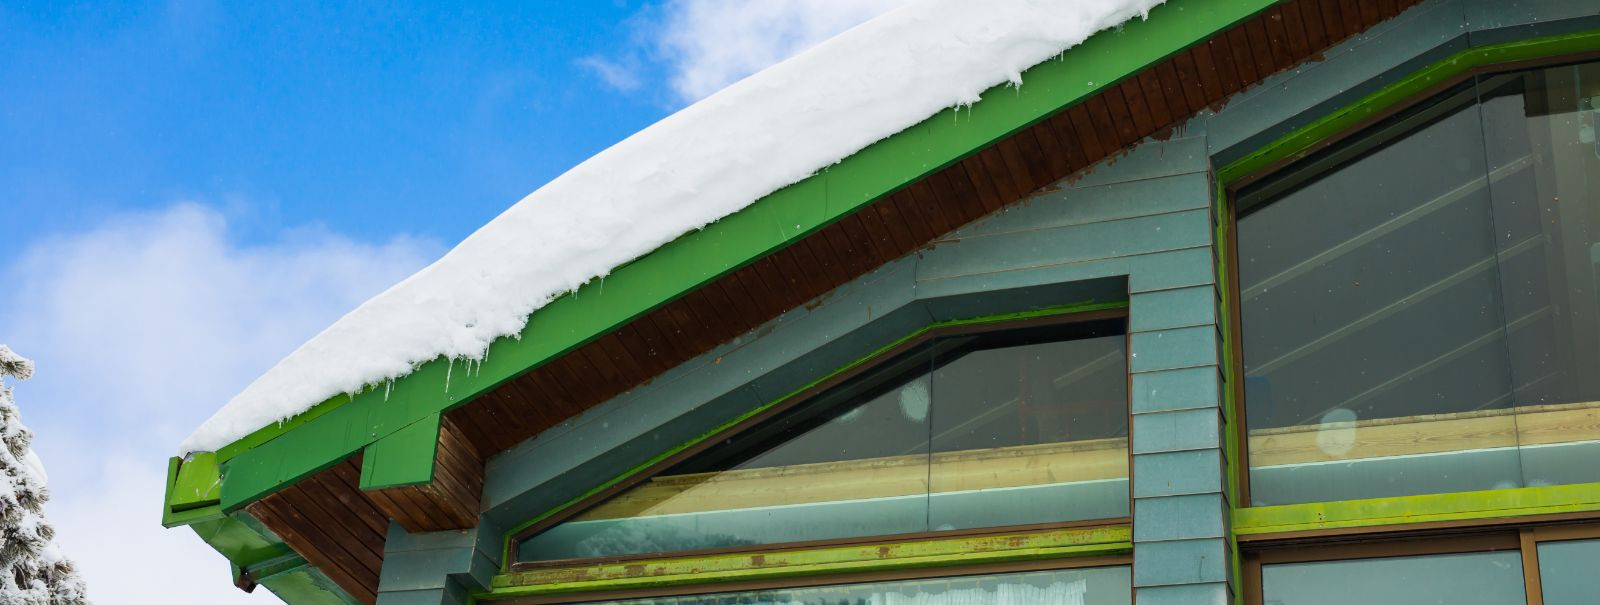 Kui talvehooaeg läheneb, peavad majaomanikud pöörama tähelepanu lume ja jää poolt esitatud väljakutsetele. Efektiivne lume koristamine ei ole ainult mugavuse kü